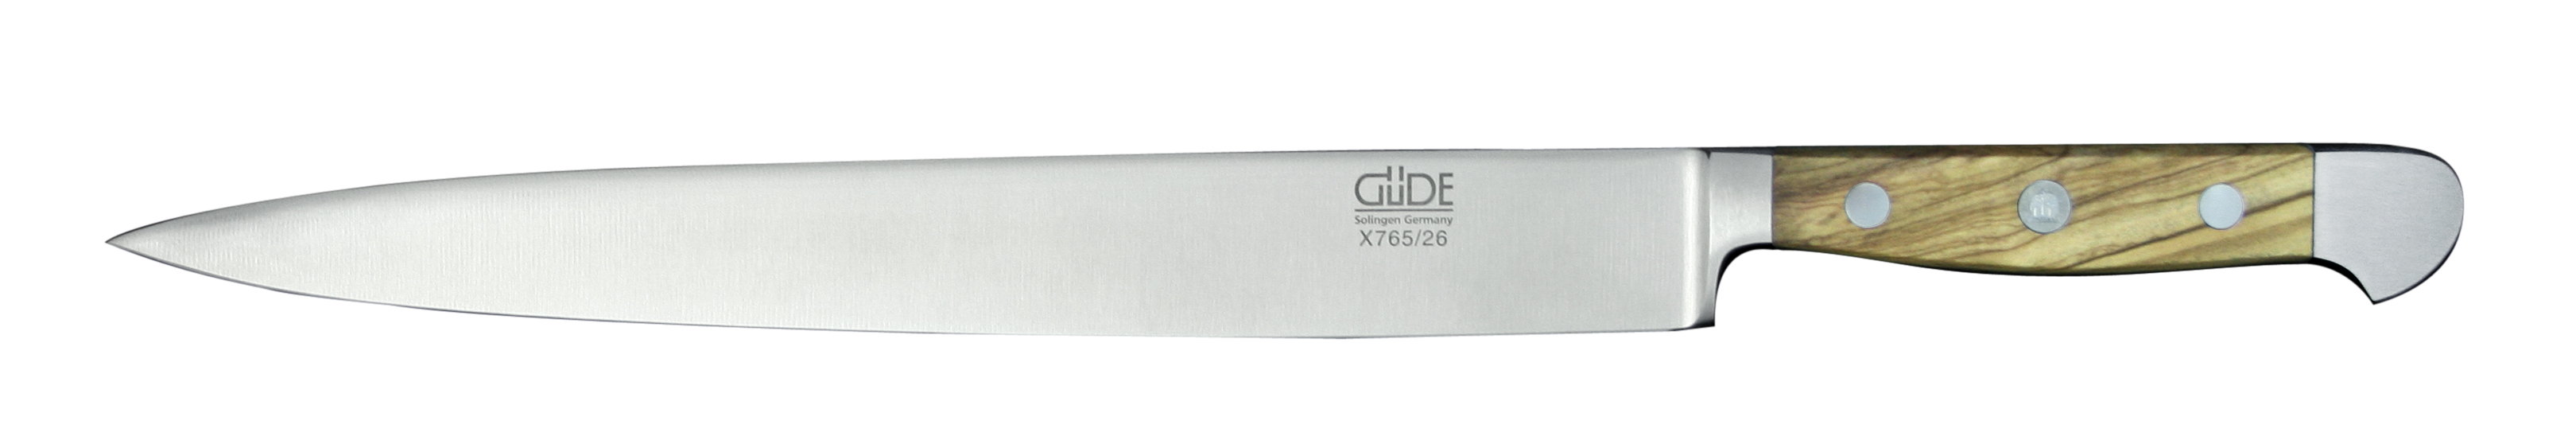 Güde Alpha Olive Schinkenmesser 26 cm / CVM-Messerstahl mit Griffschalen aus Olivenholz